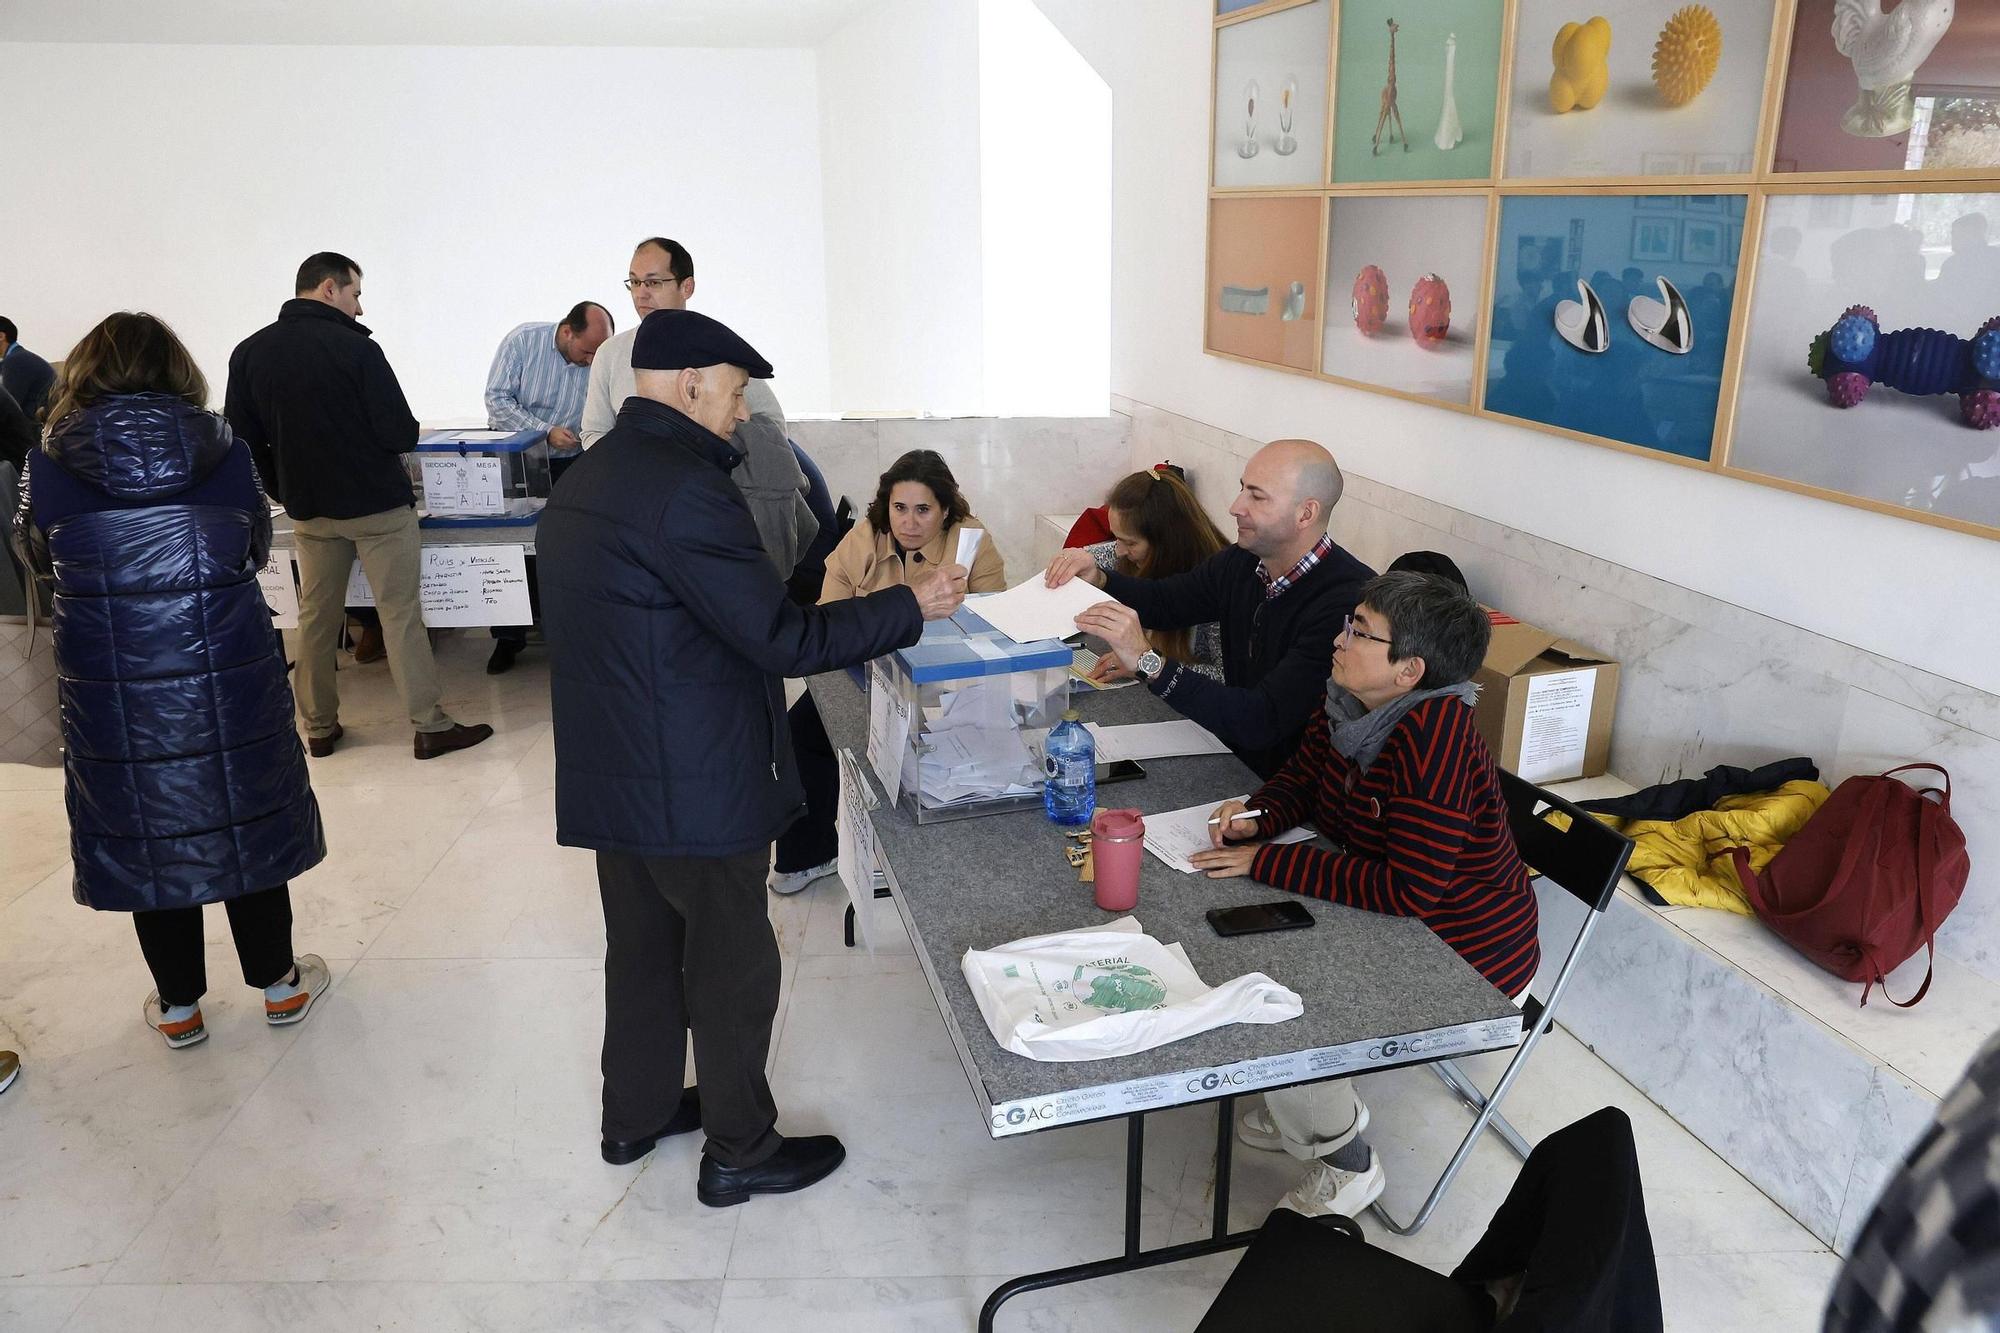 Así transcurre una jornada electoral clave en Santiago